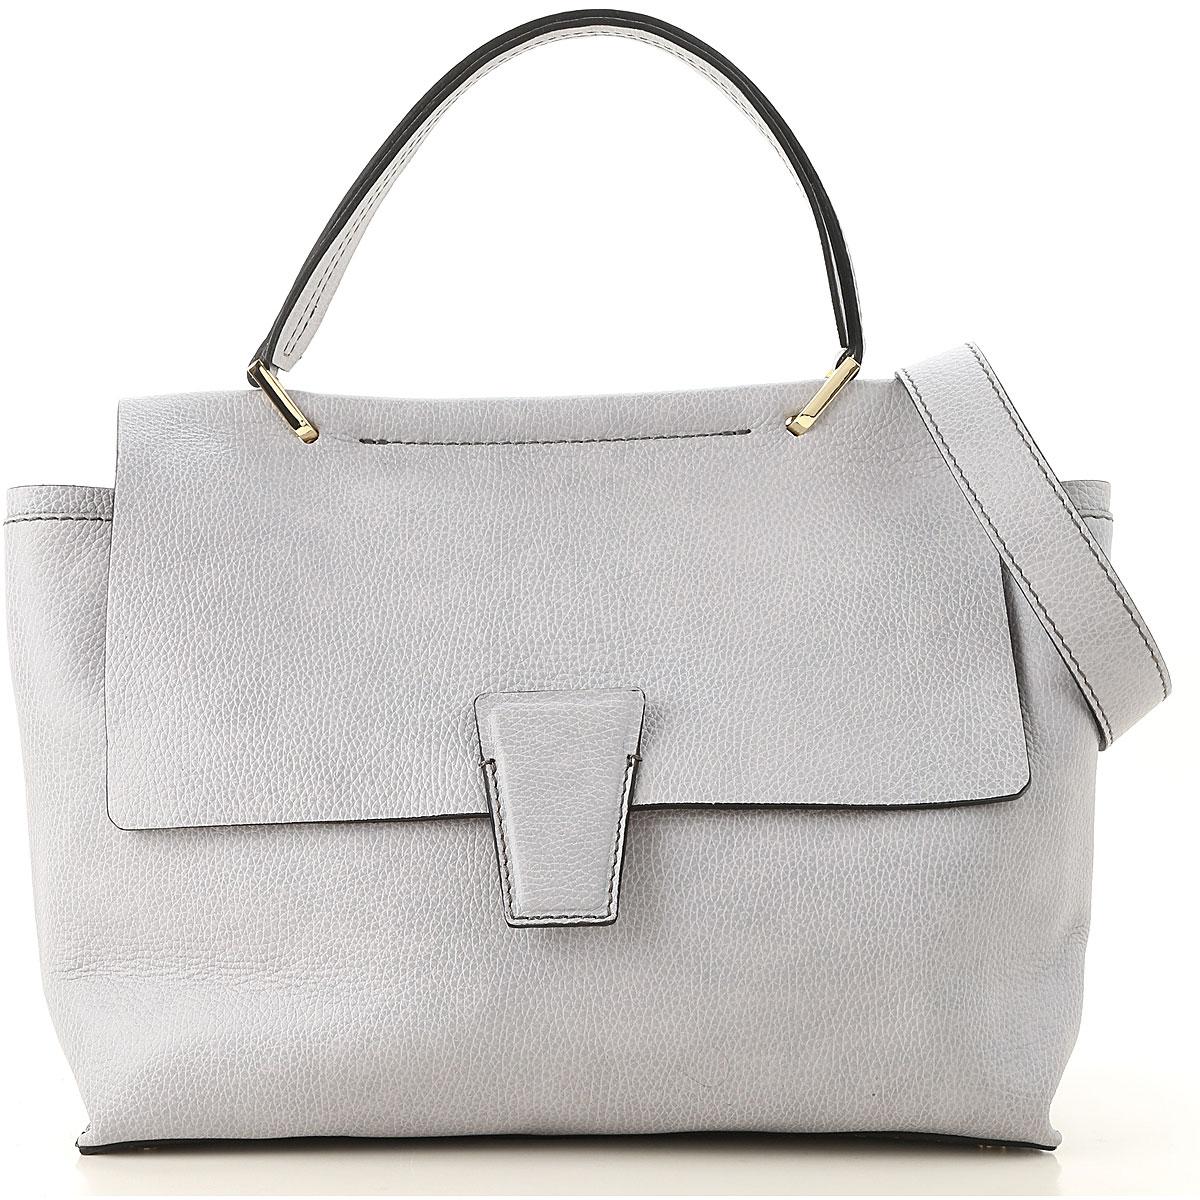 Gianni Chiarini Tote Bag On Sale in Grey (Gray) - Lyst